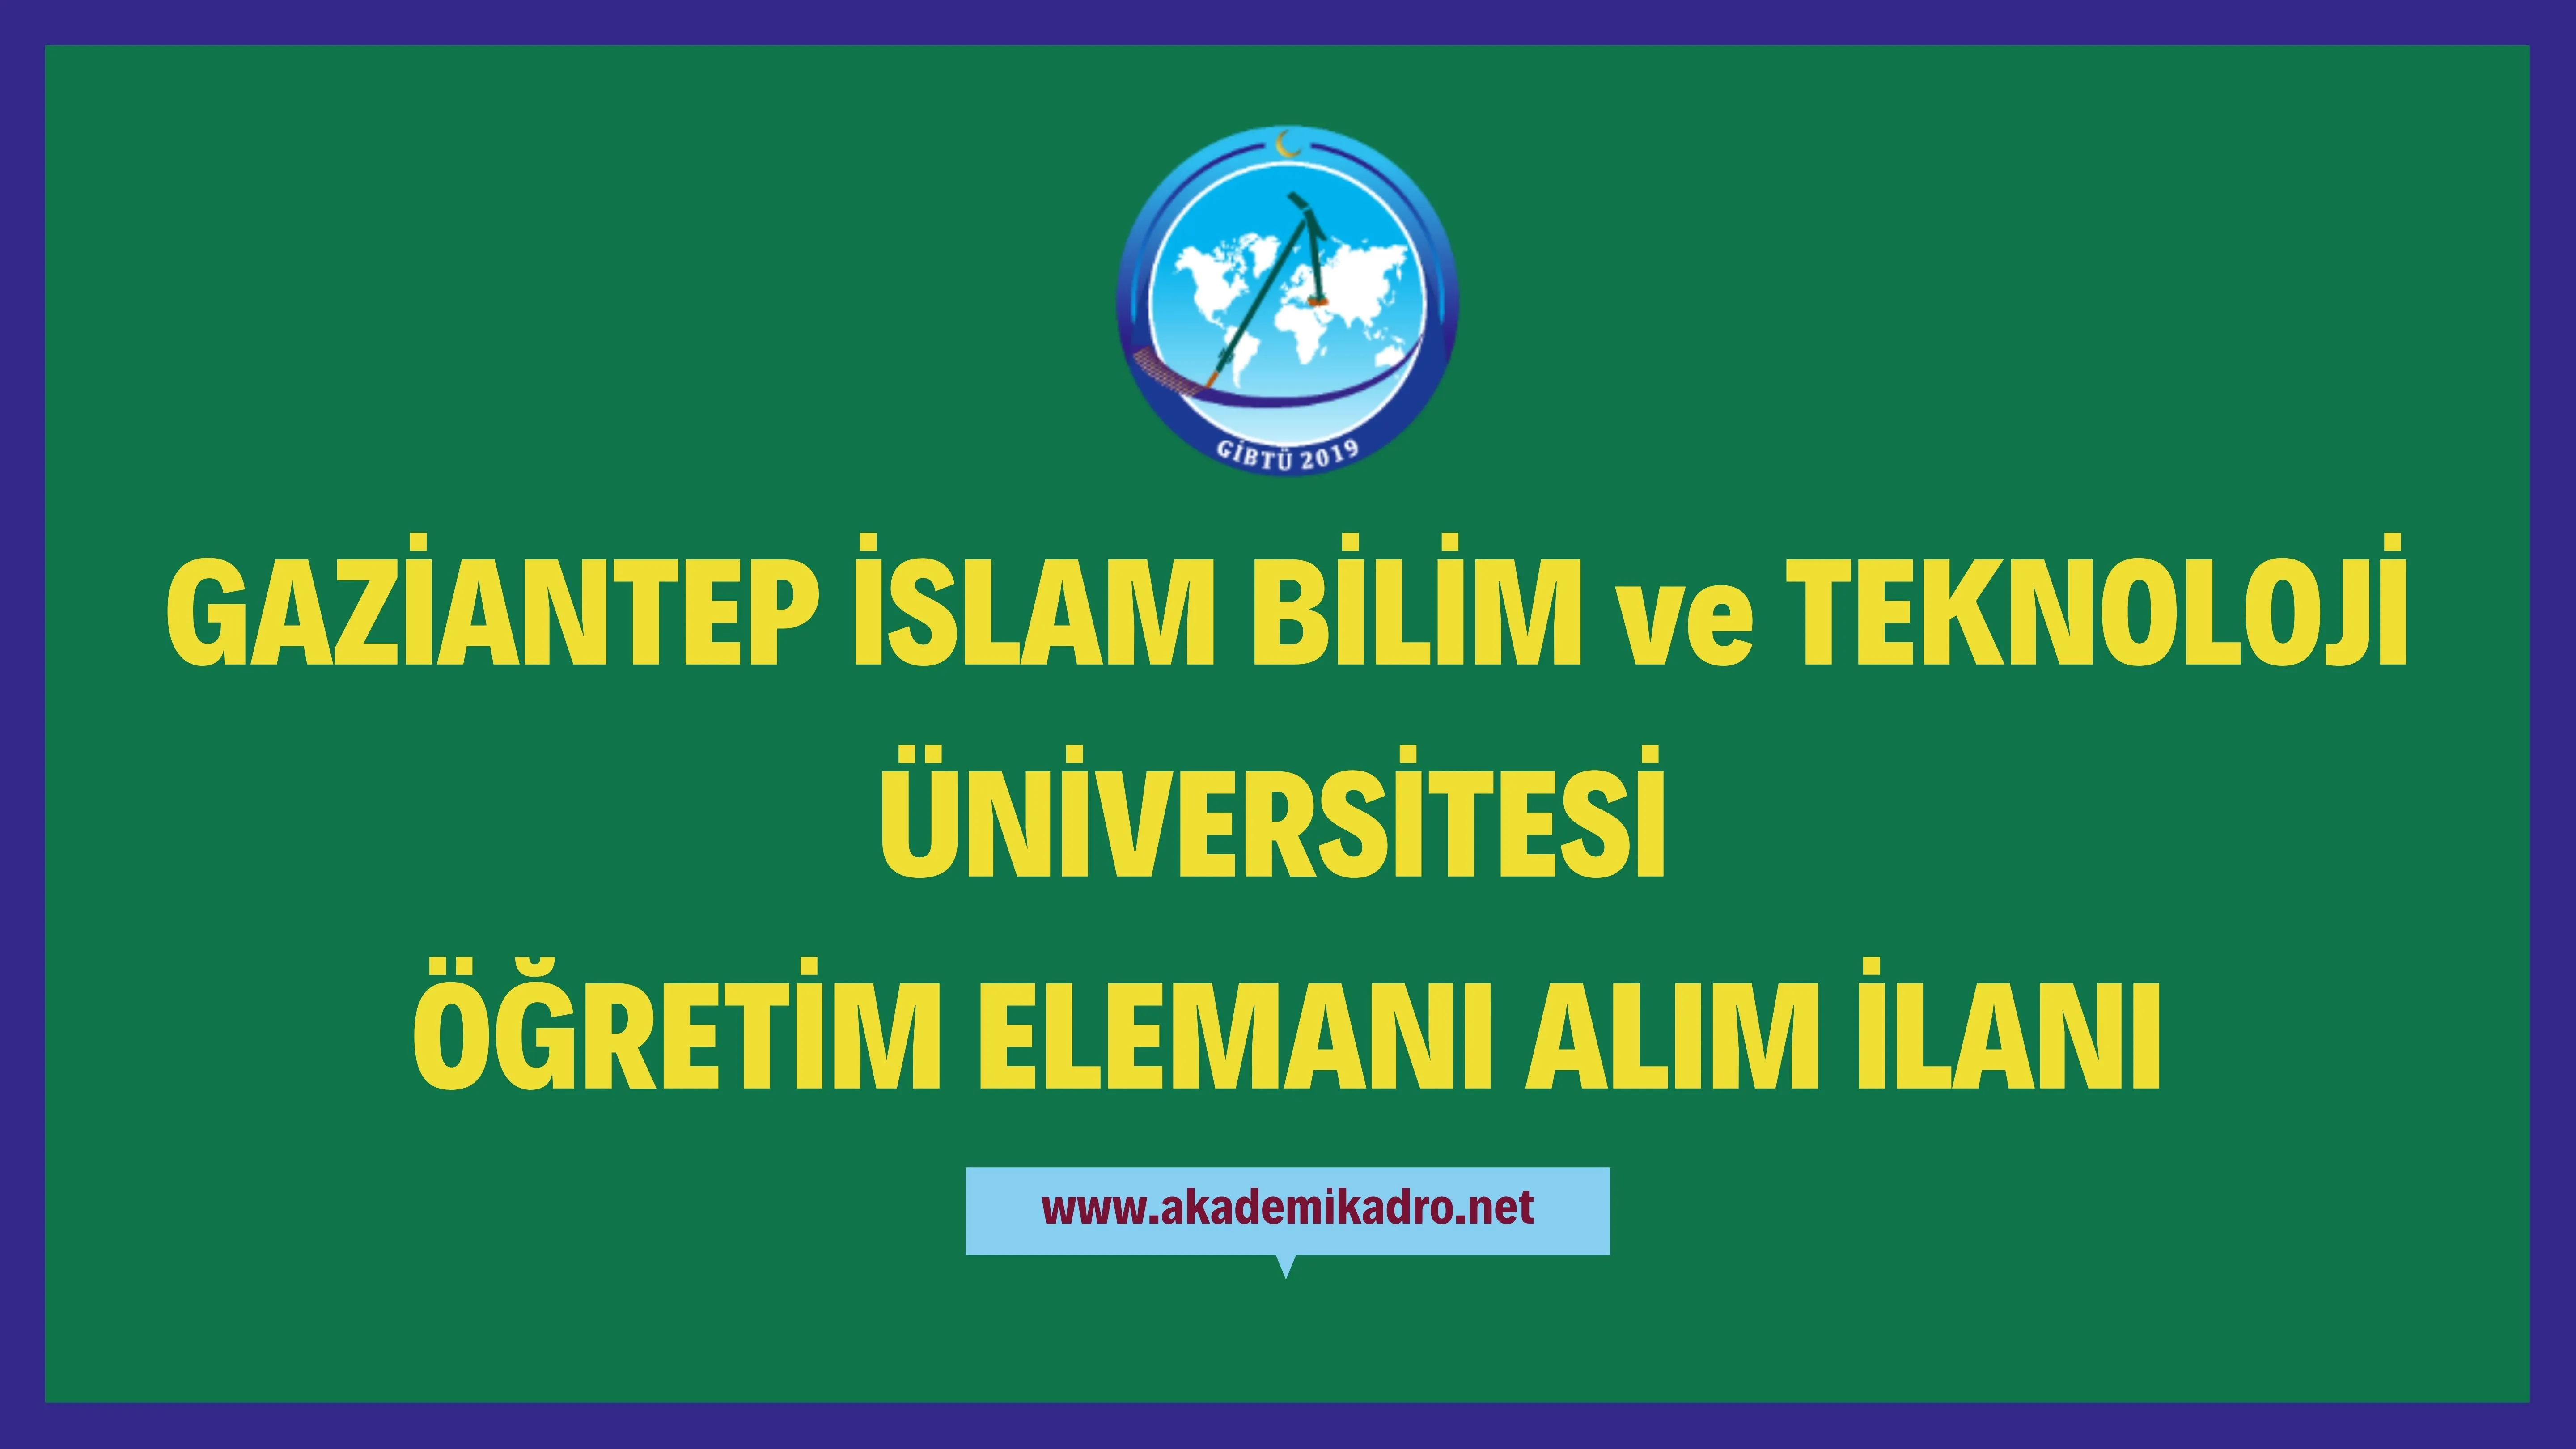 Gaziantep İslam Bilim ve Teknoloji Üniversitesi 6 akademik personel alacak